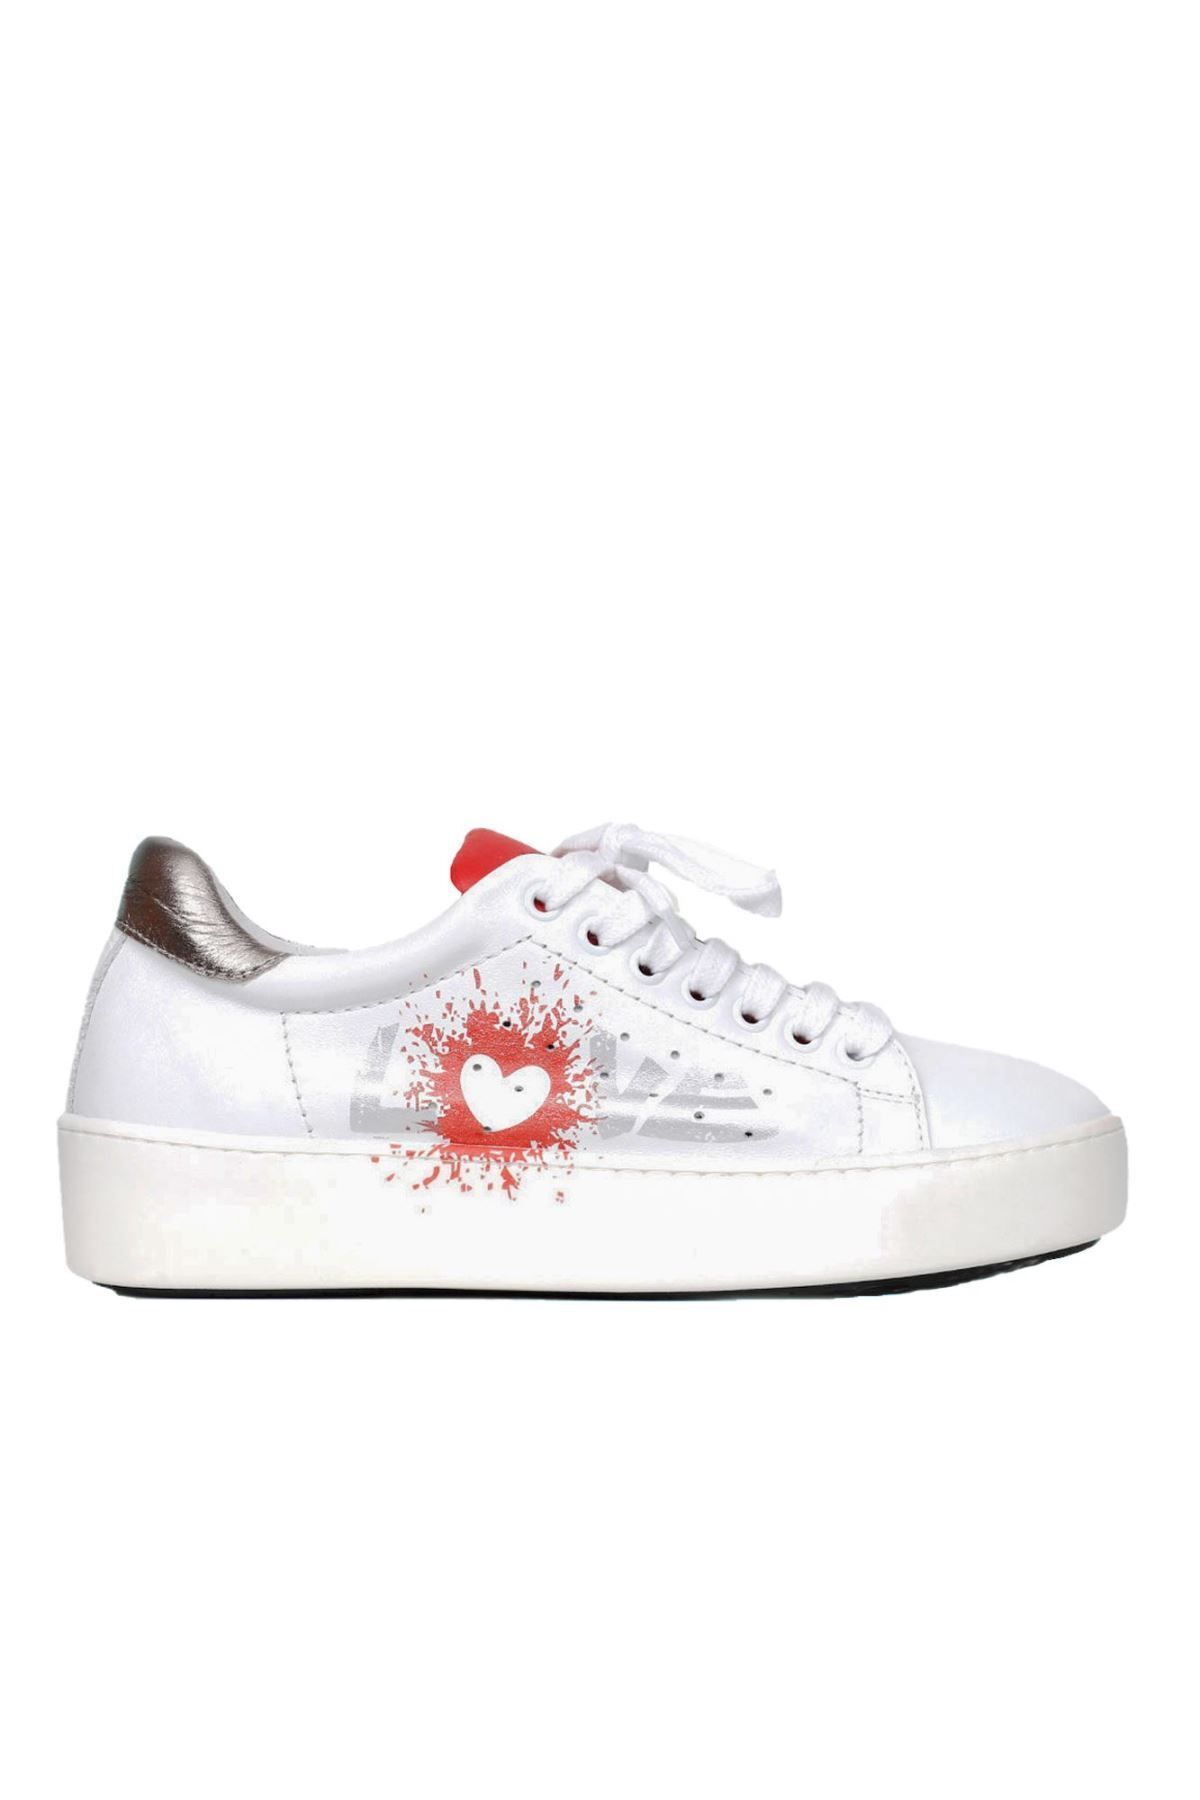 BUENO Shoes Beyaz B09c02 Kadın Spor Ayakkabı